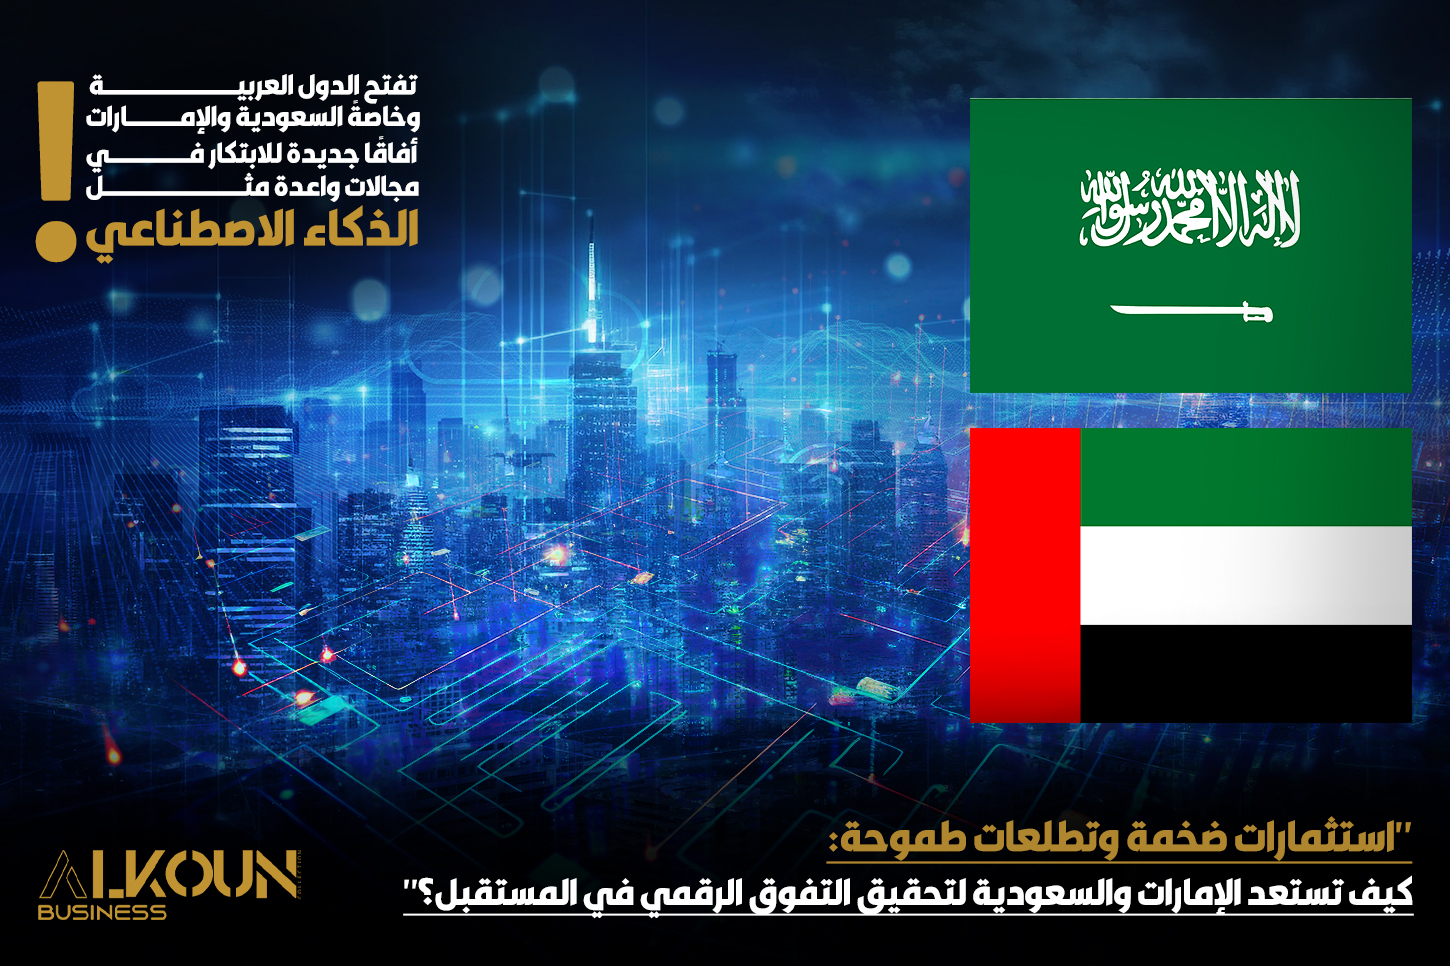 "استثمارات ضخمة وتطلعات طموحة: كيف تستعد الإمارات والسعودية لتحقيق التفوق الرقمي في المستقبل؟"